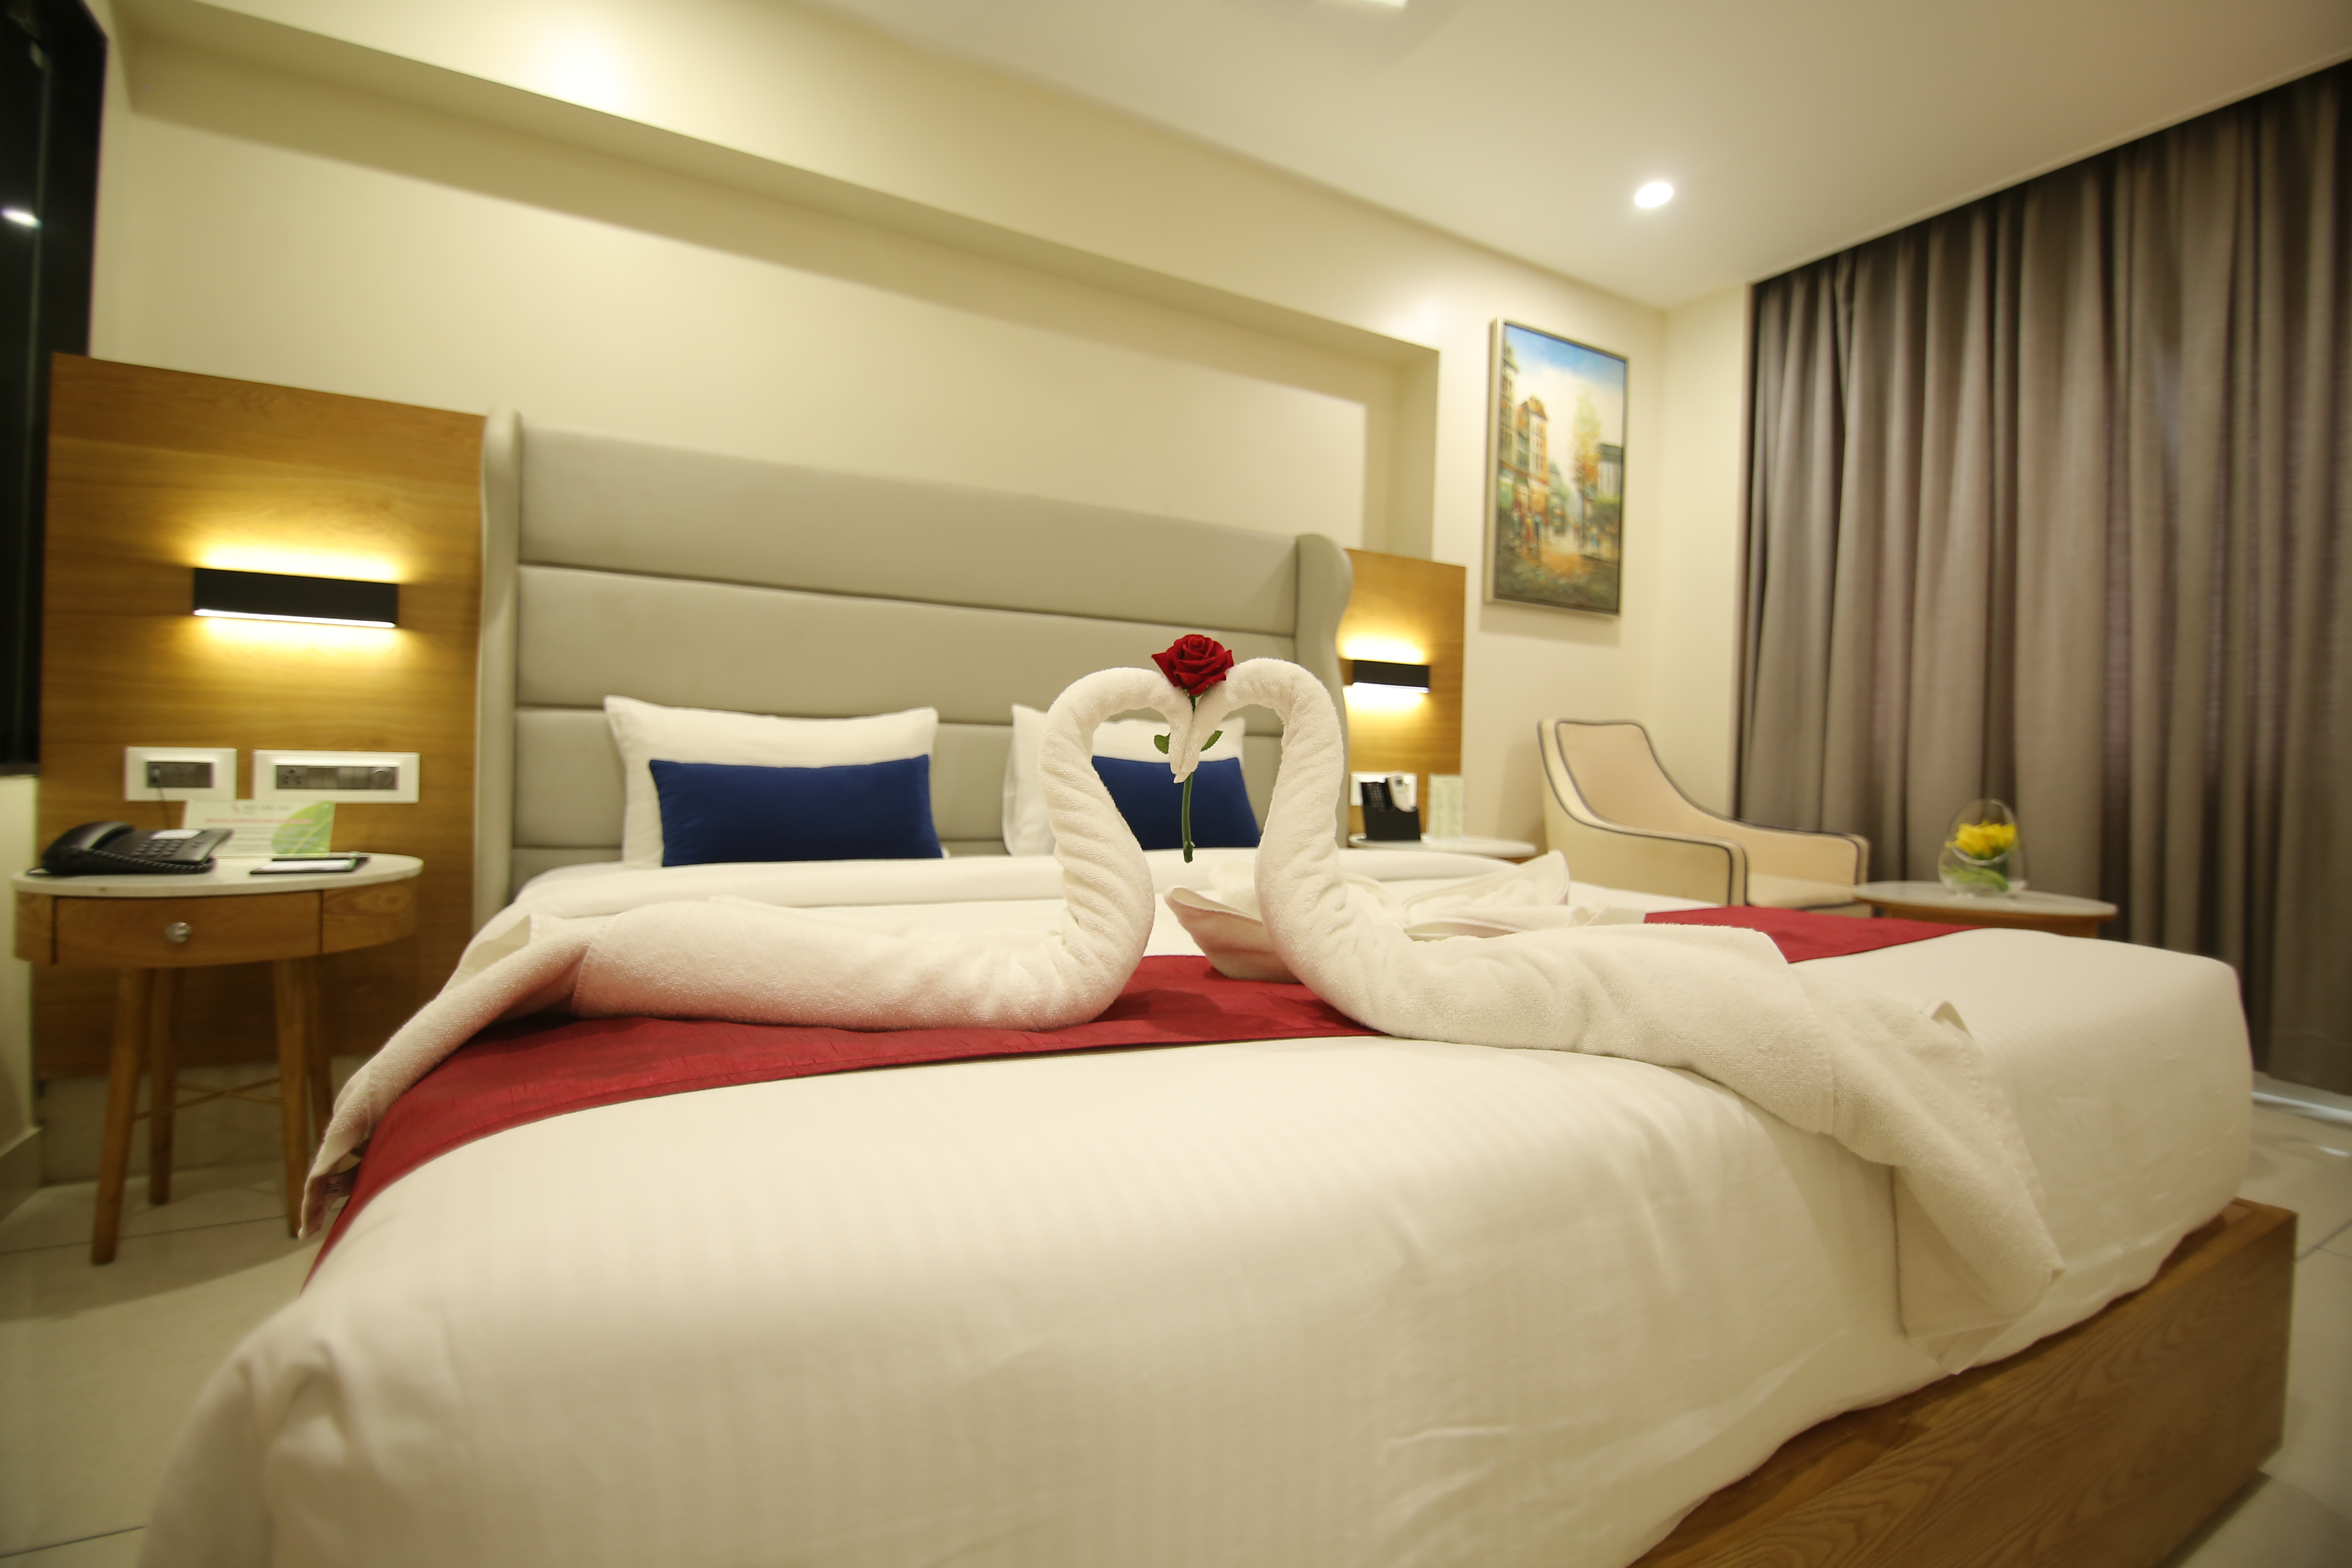 Best-suite rooms in khammam